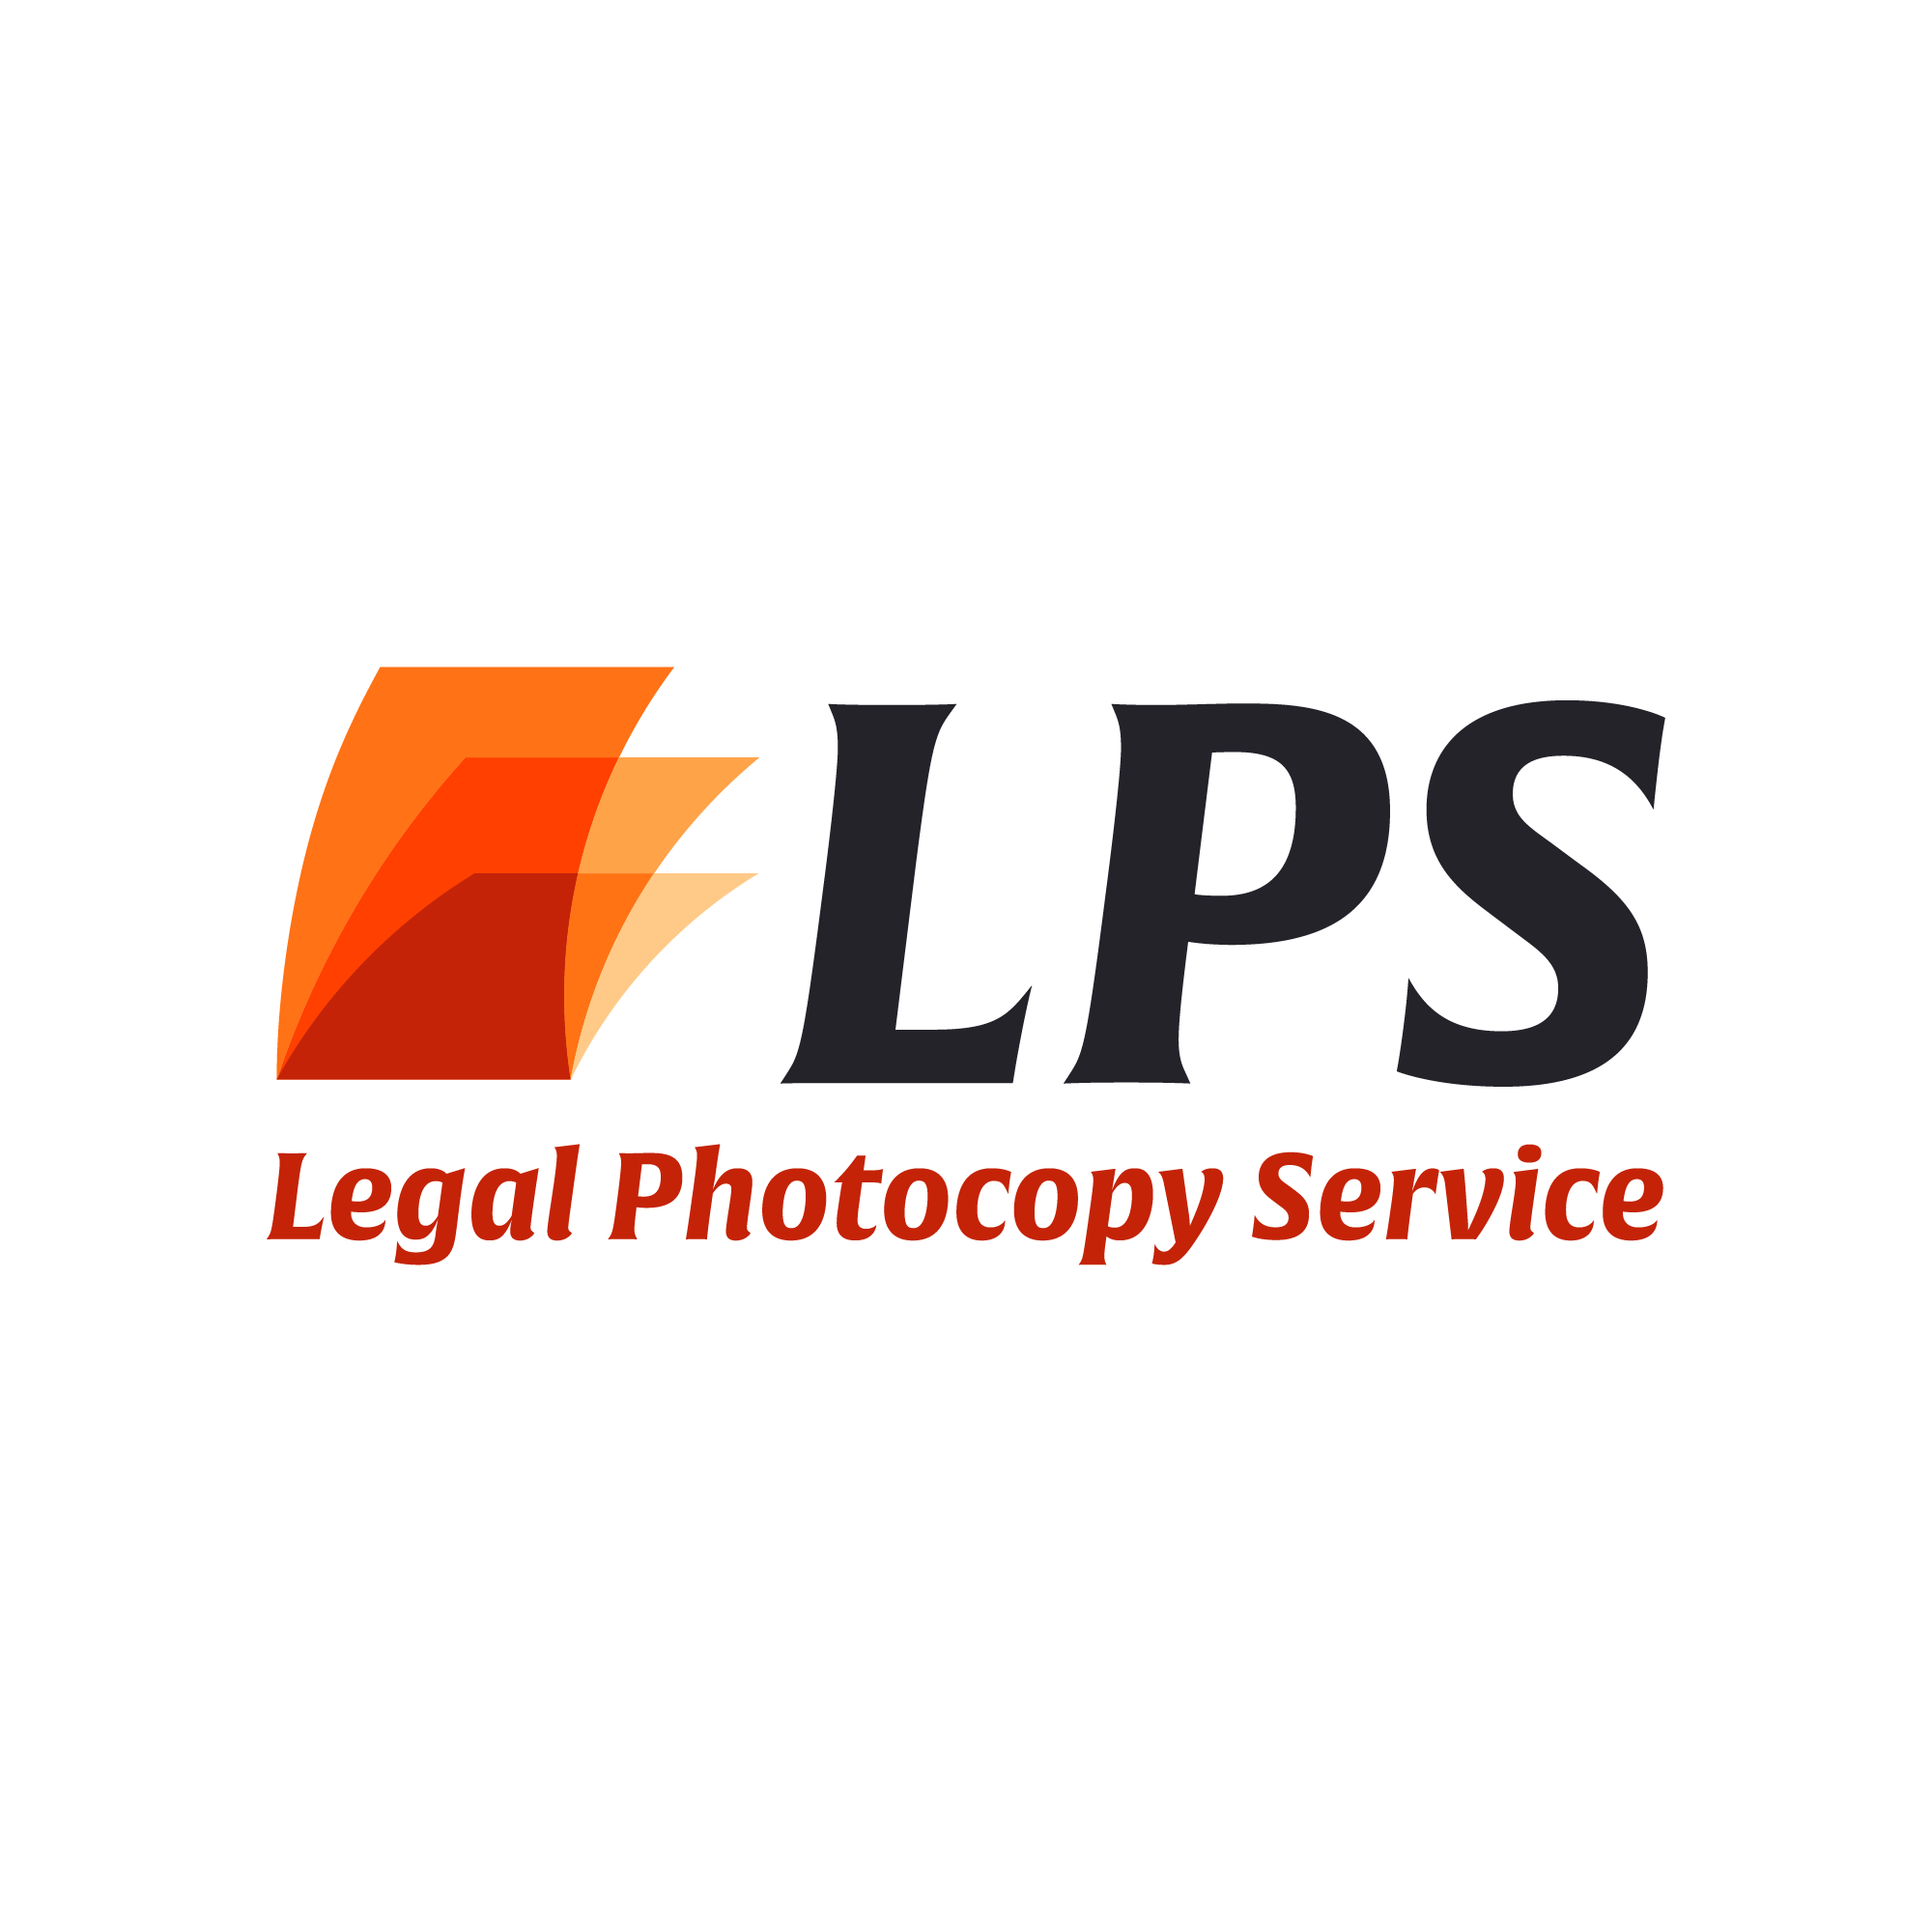 Legal Photocopy Service - Redding, CA 96001 - (530)241-7686 | ShowMeLocal.com